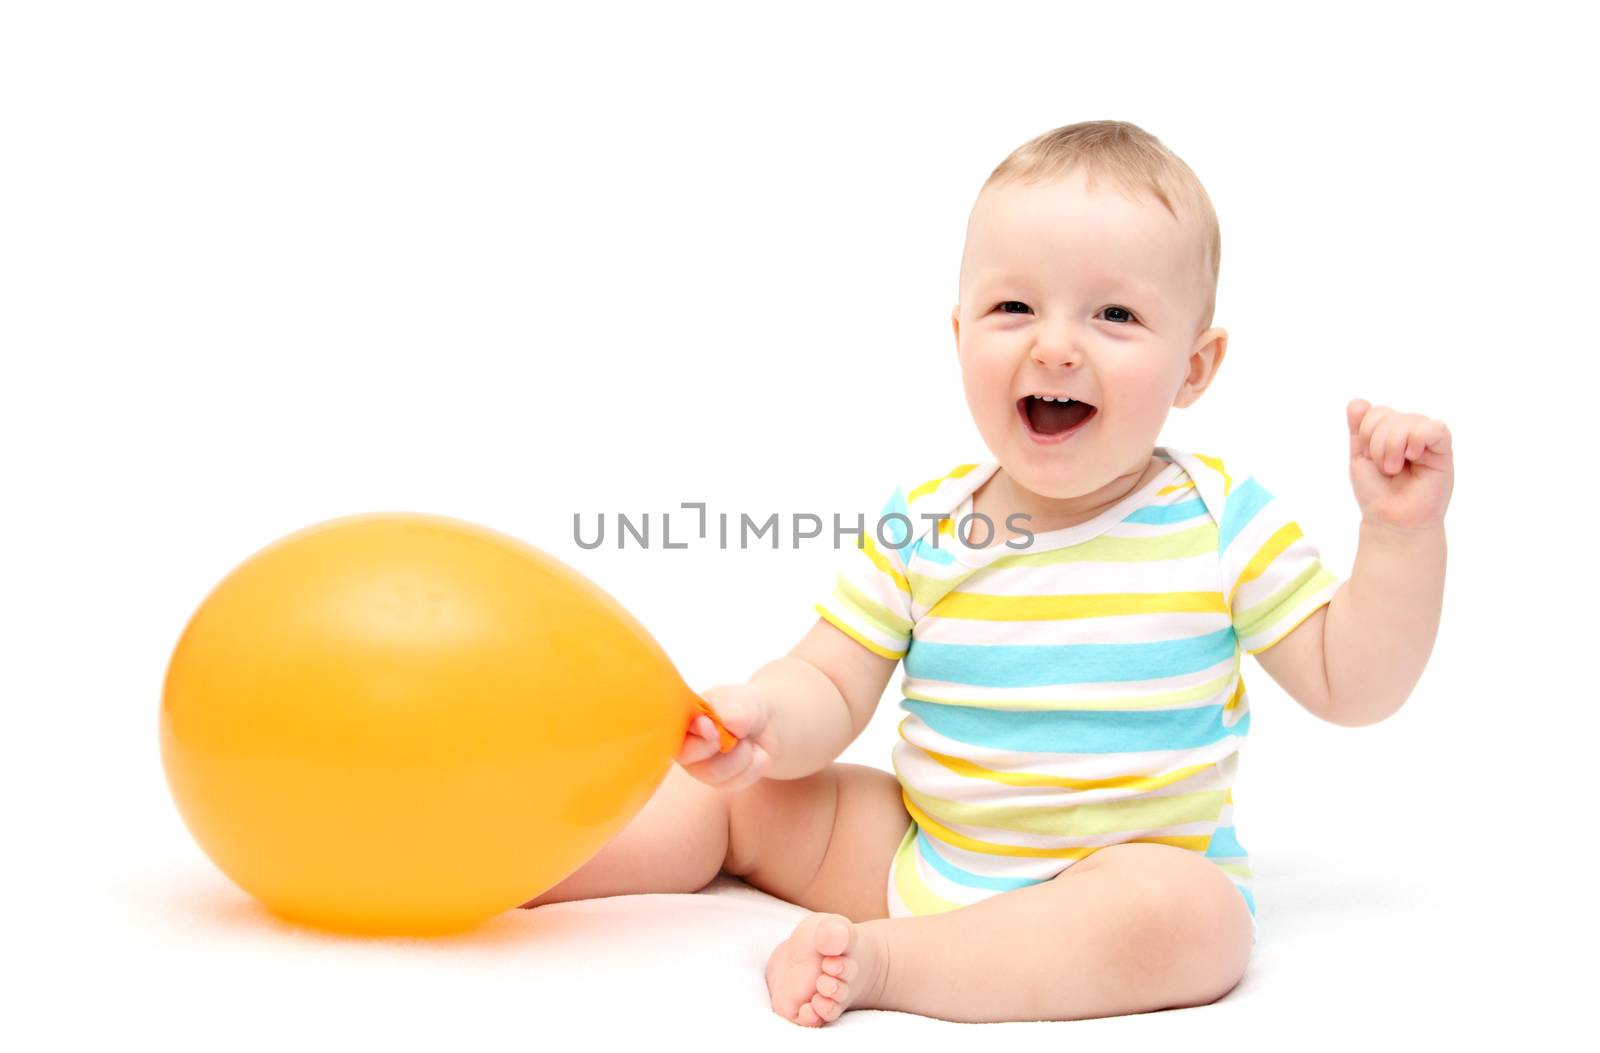 Happy baby with balloon by NikolayK